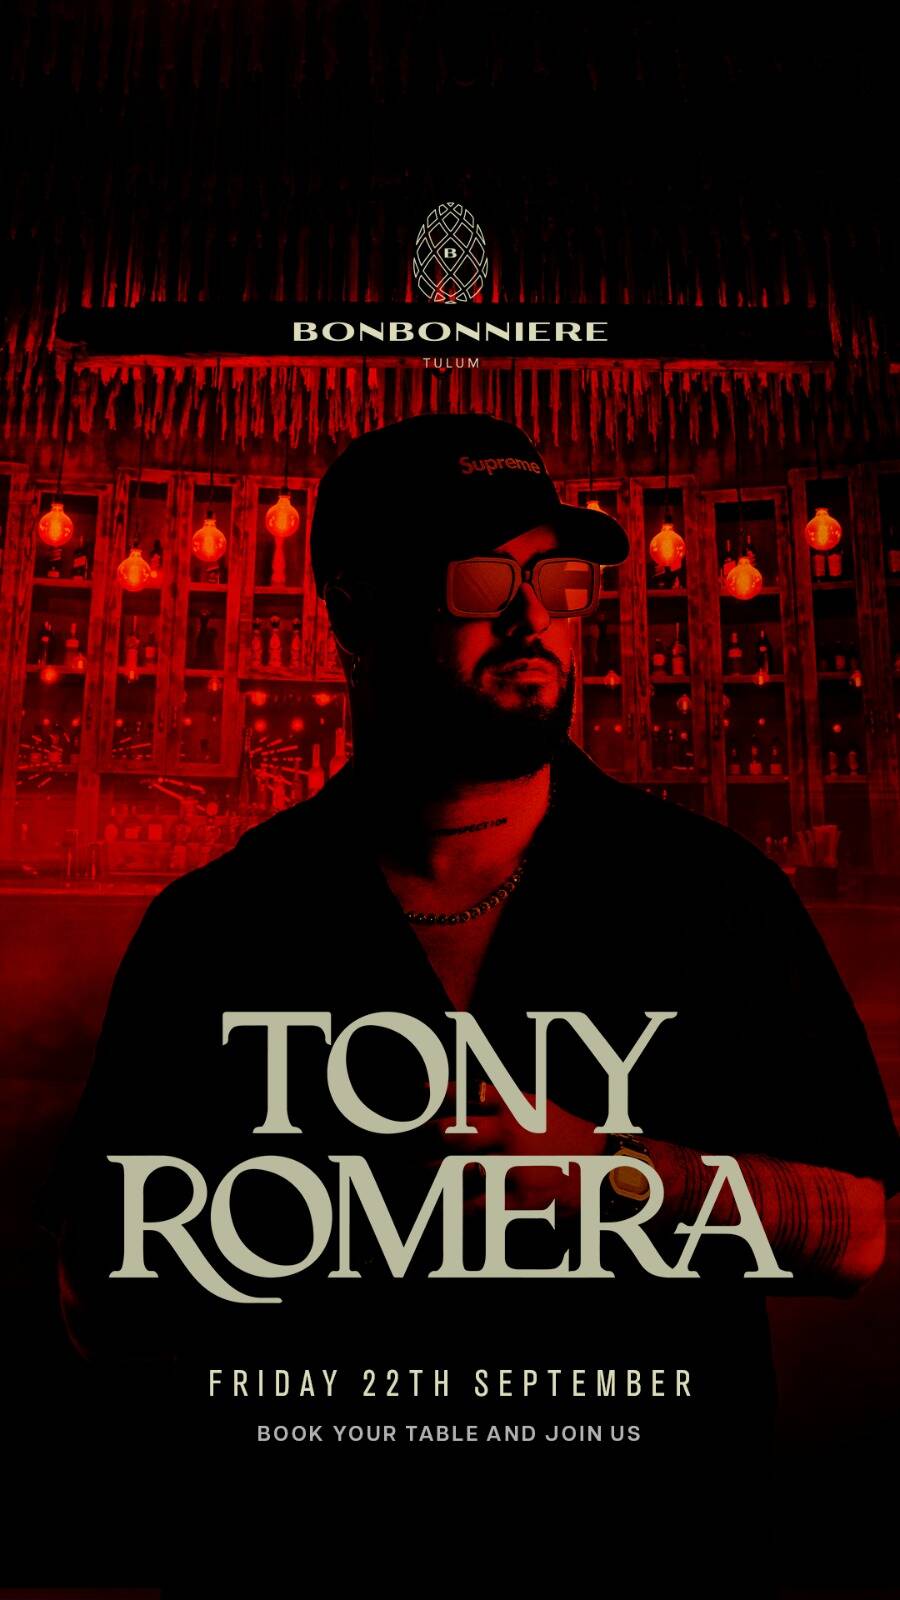 TONY ROMERA @ BONBONNIERE TULUM